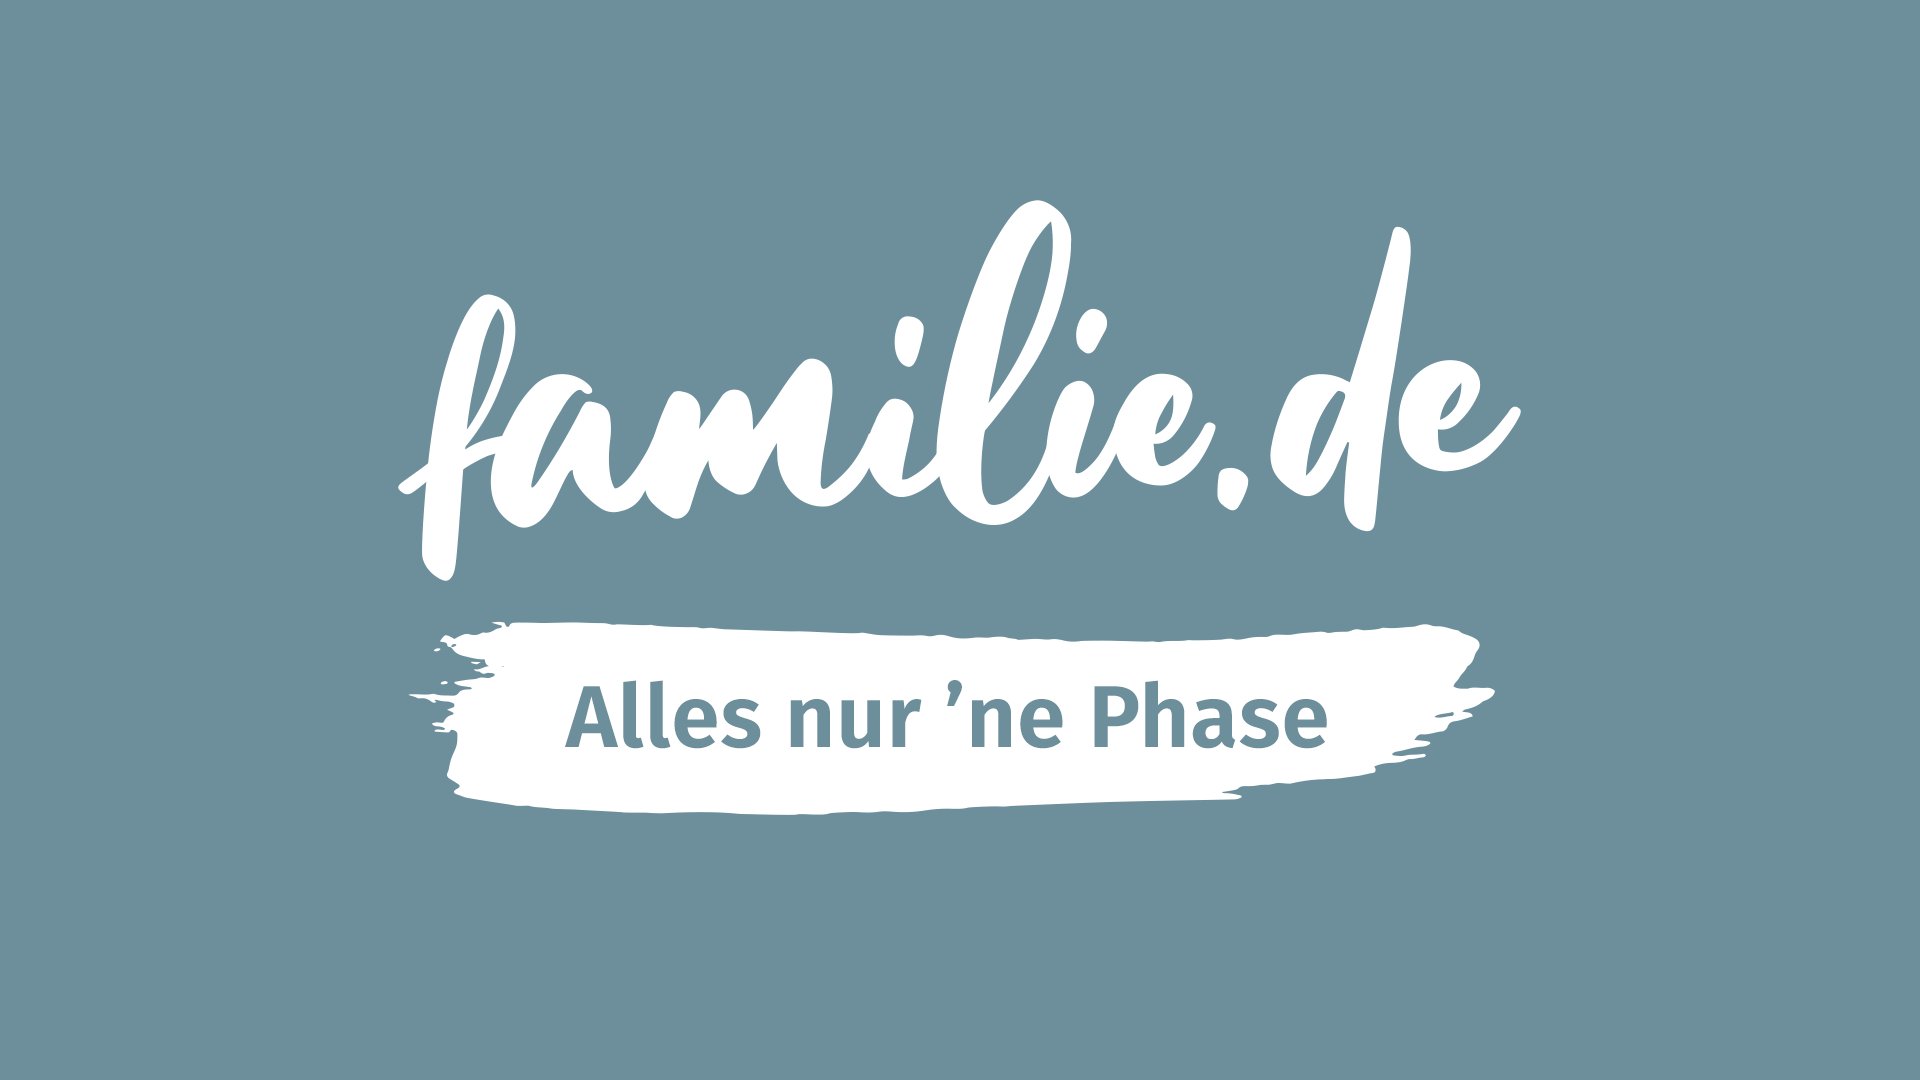 (c) Familie.de